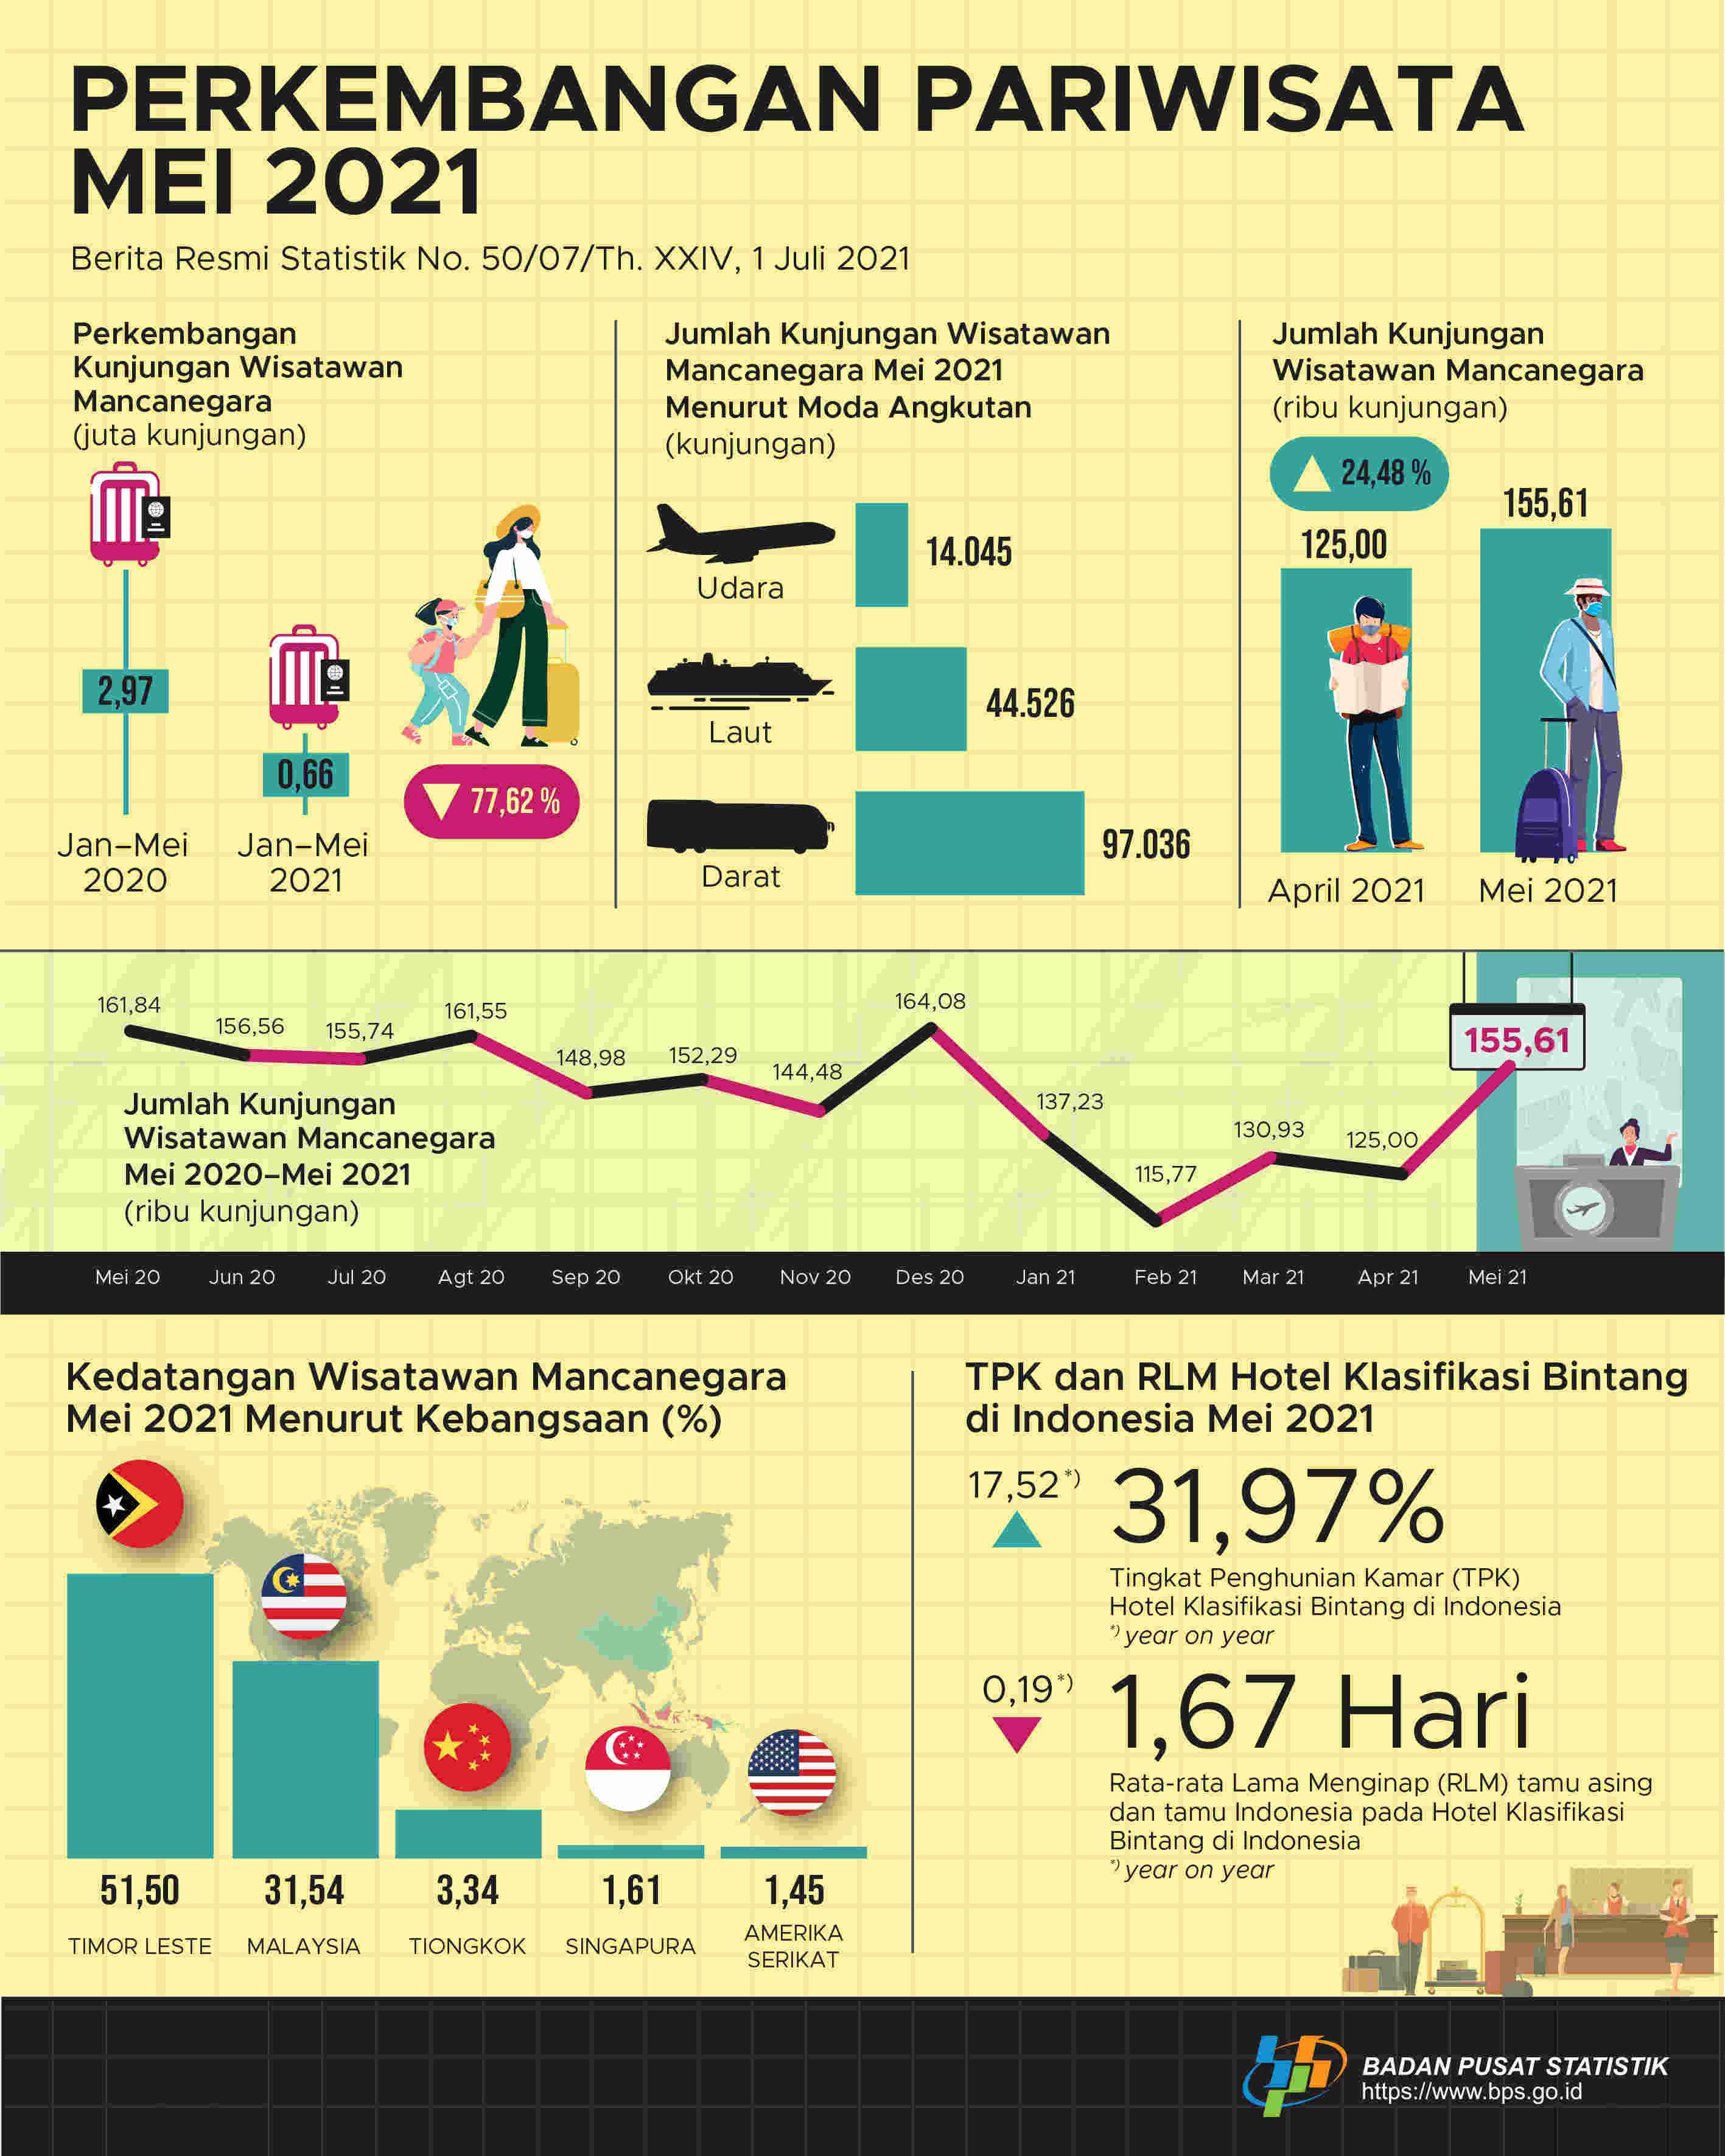 Jumlah kunjungan wisman ke Indonesia Mei 2021 mencapai 155,61 ribu kunjungan